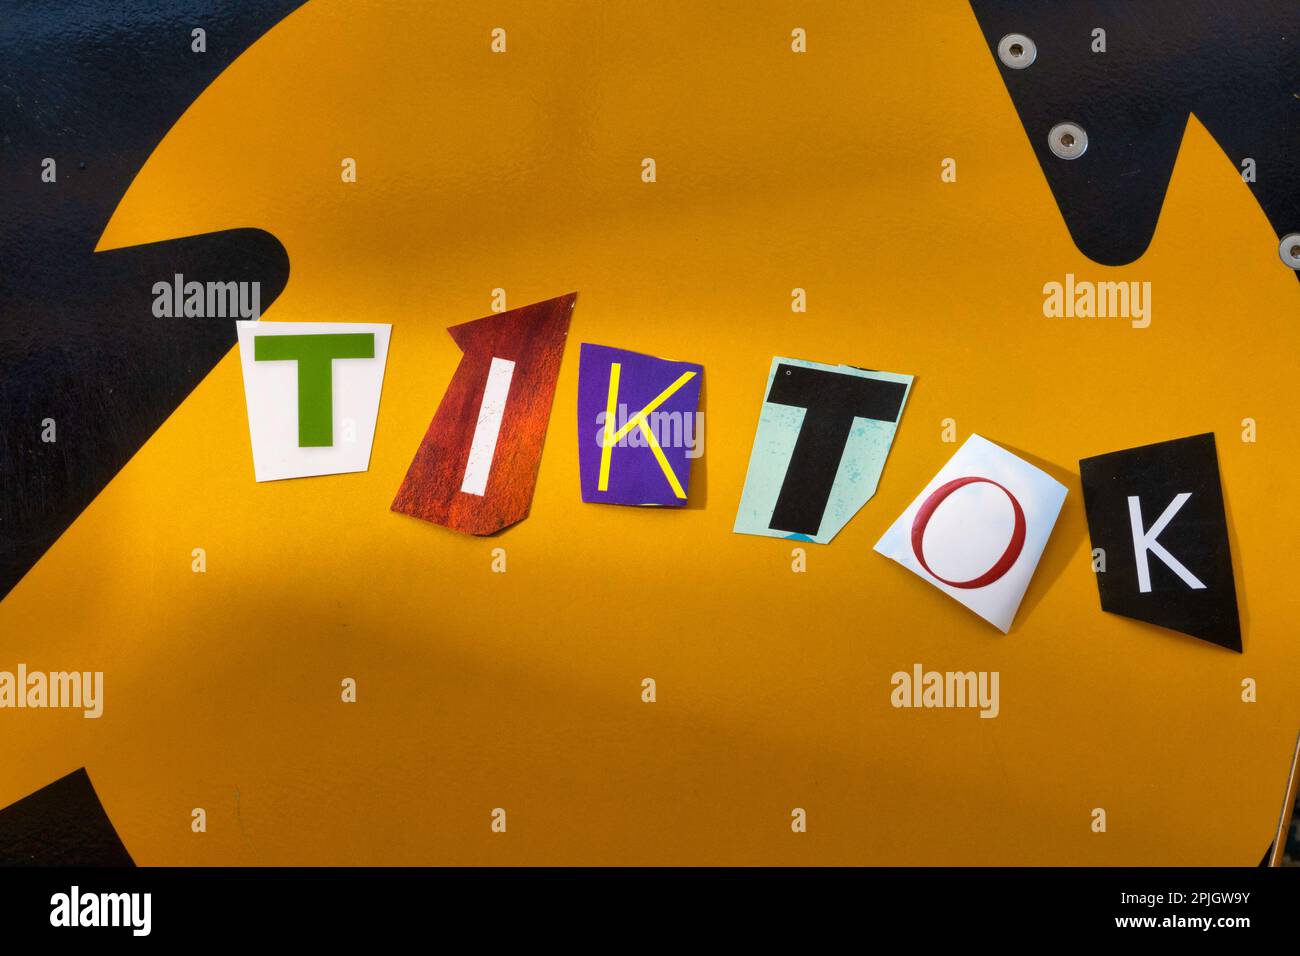 Le mot 'TikTok' en utilisant des lettres de papier découpées dans la rançon typographie d'effet de note Banque D'Images